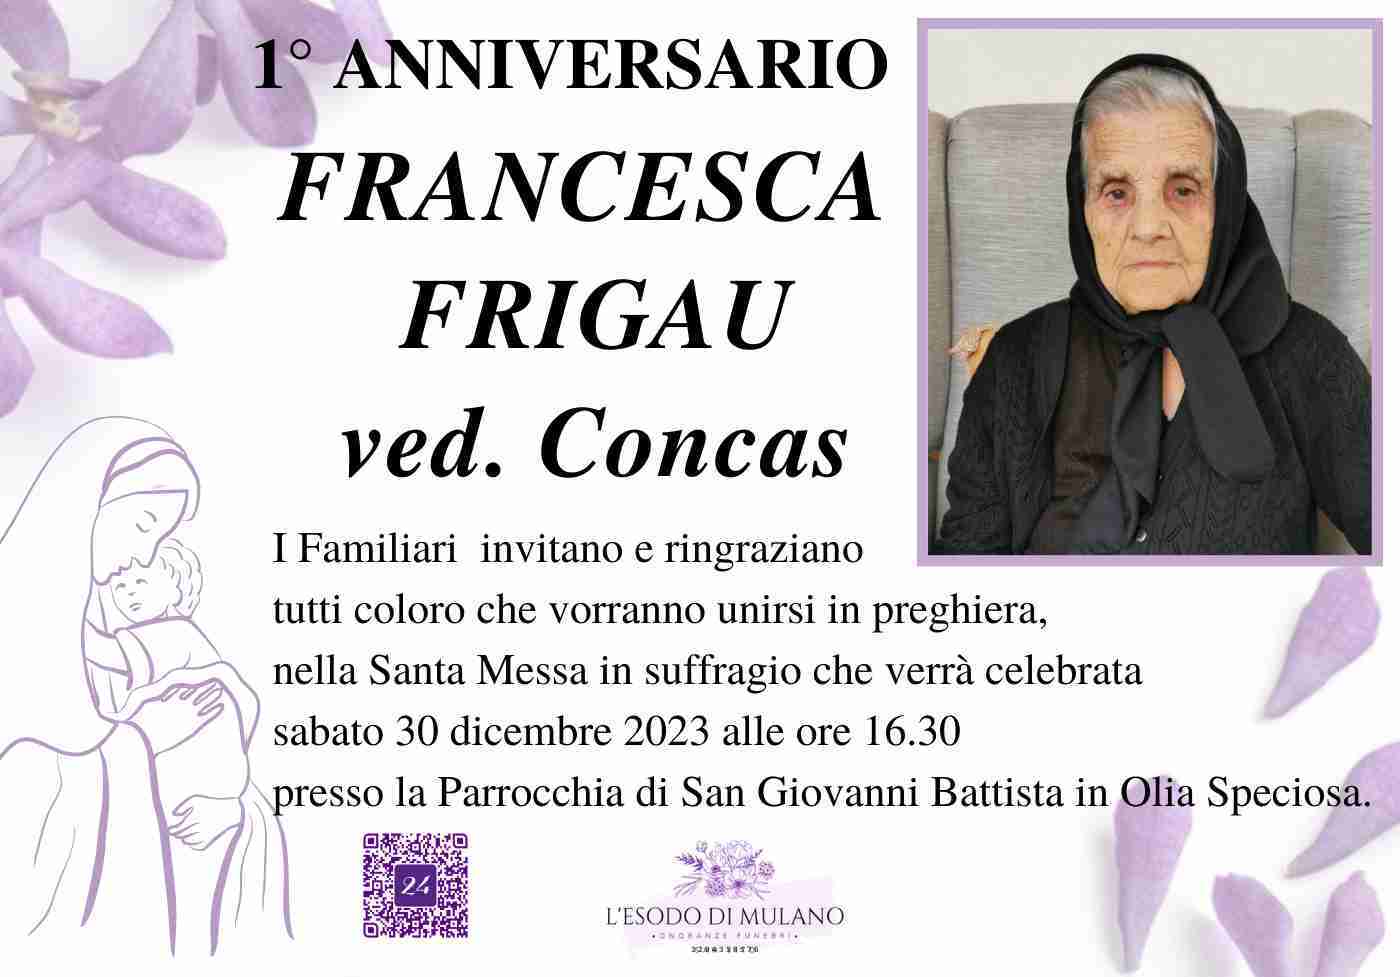 Francesca Frigau